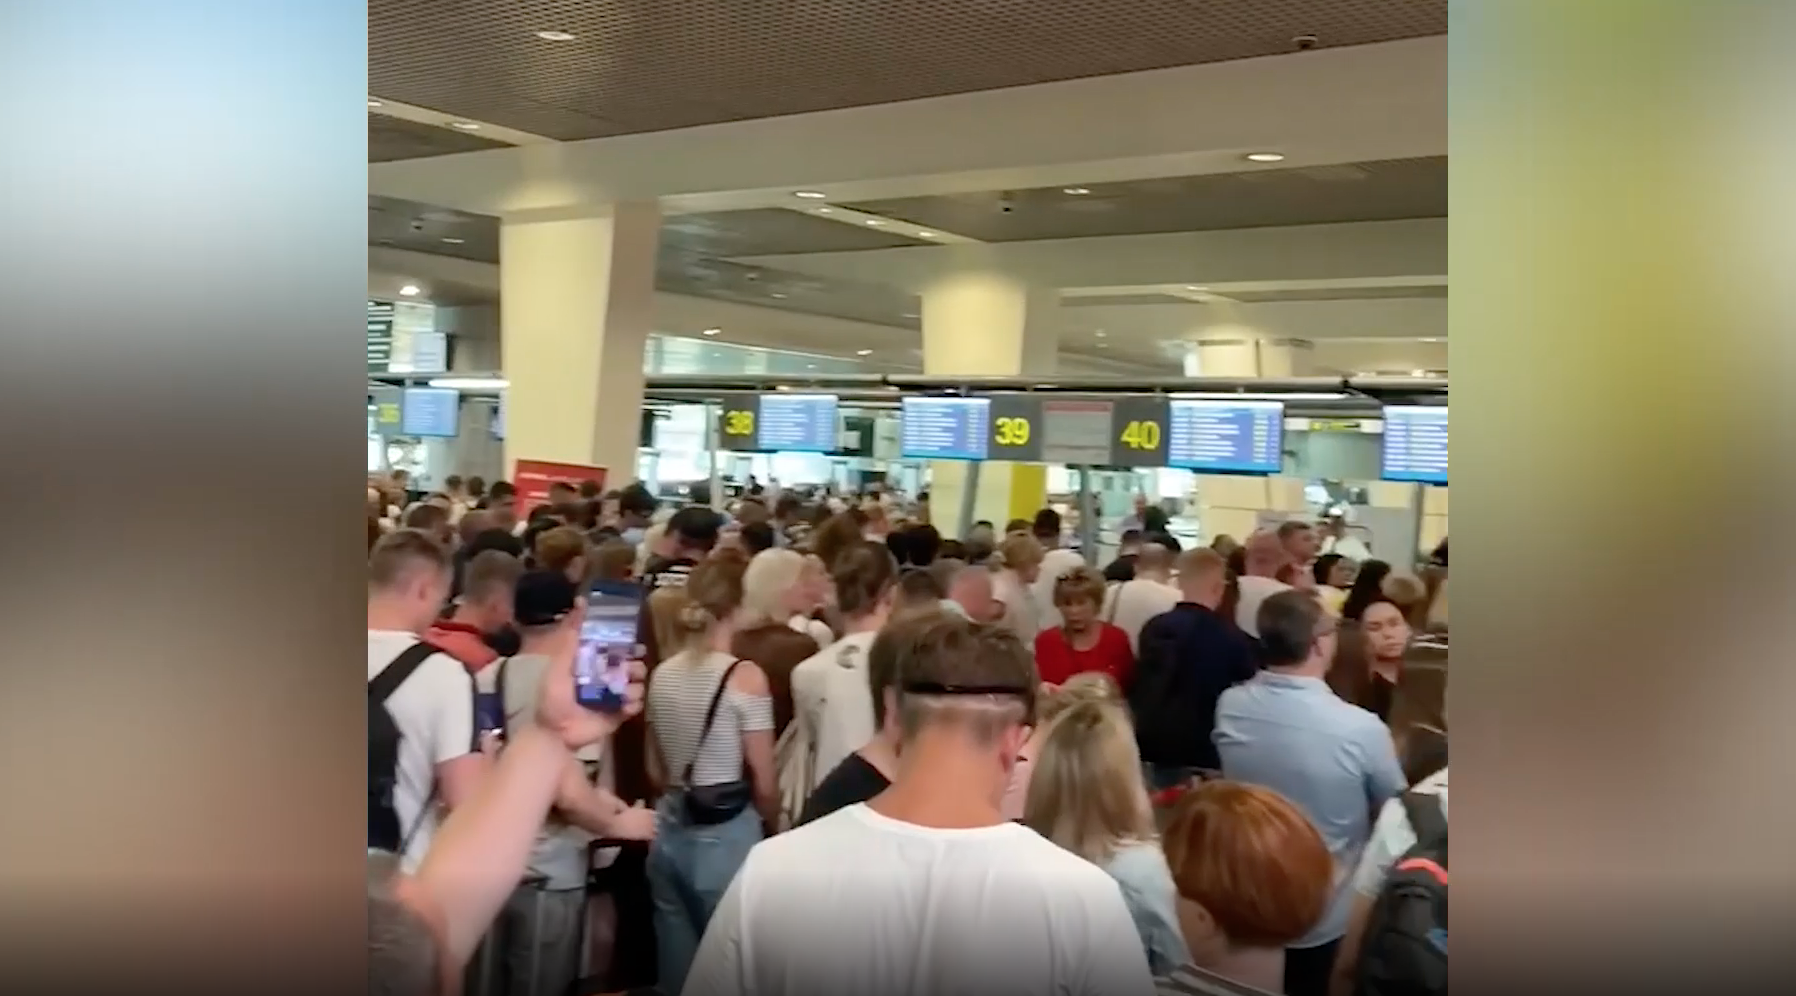 Сбой в системе регистрации привёл к очередям из сотен пассажиров в Домодедово